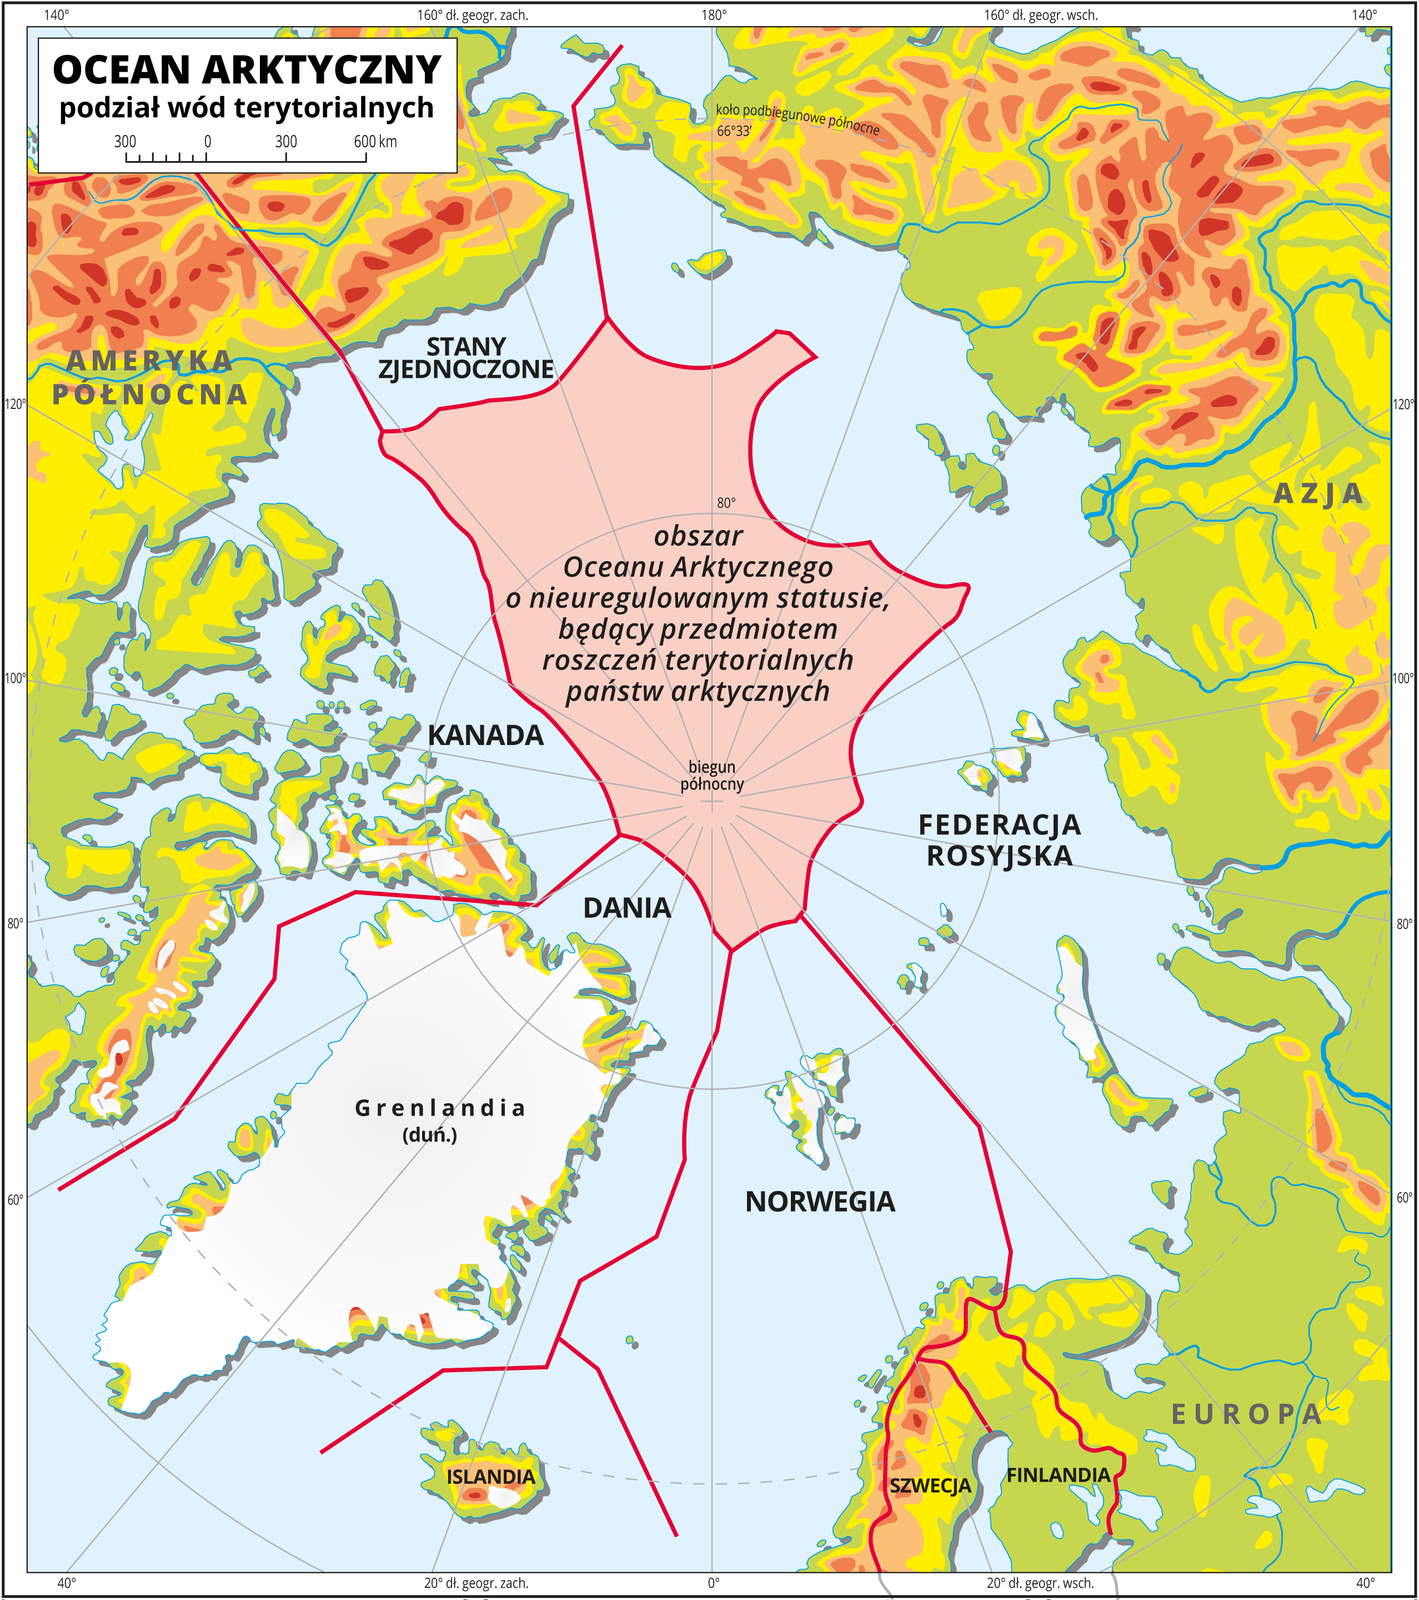 Ilustracja przedstawia mapę Oceanu Arktycznego. Na mapie przedstawiono podział wód terytorialnych. Poprowadzono czerwone linie. Przypisano obszary Oceanu Arktycznego Stanom Zjednoczonym, Kanadzie, Danii, Norwegii, Federacji Rosyjskiej. Centralną cześć Oceanu Arktycznego wokół bieguna północnego opisano jako obszar Oceanu Arktycznego o nieuregulowanym statusie, będący przedmiotem roszczeń terytorialnych państw arktycznych. Na mapie południki i równoleżniki. Dookoła mapy w białej ramce opisano współrzędne geograficzne co dwadzieścia stopni.